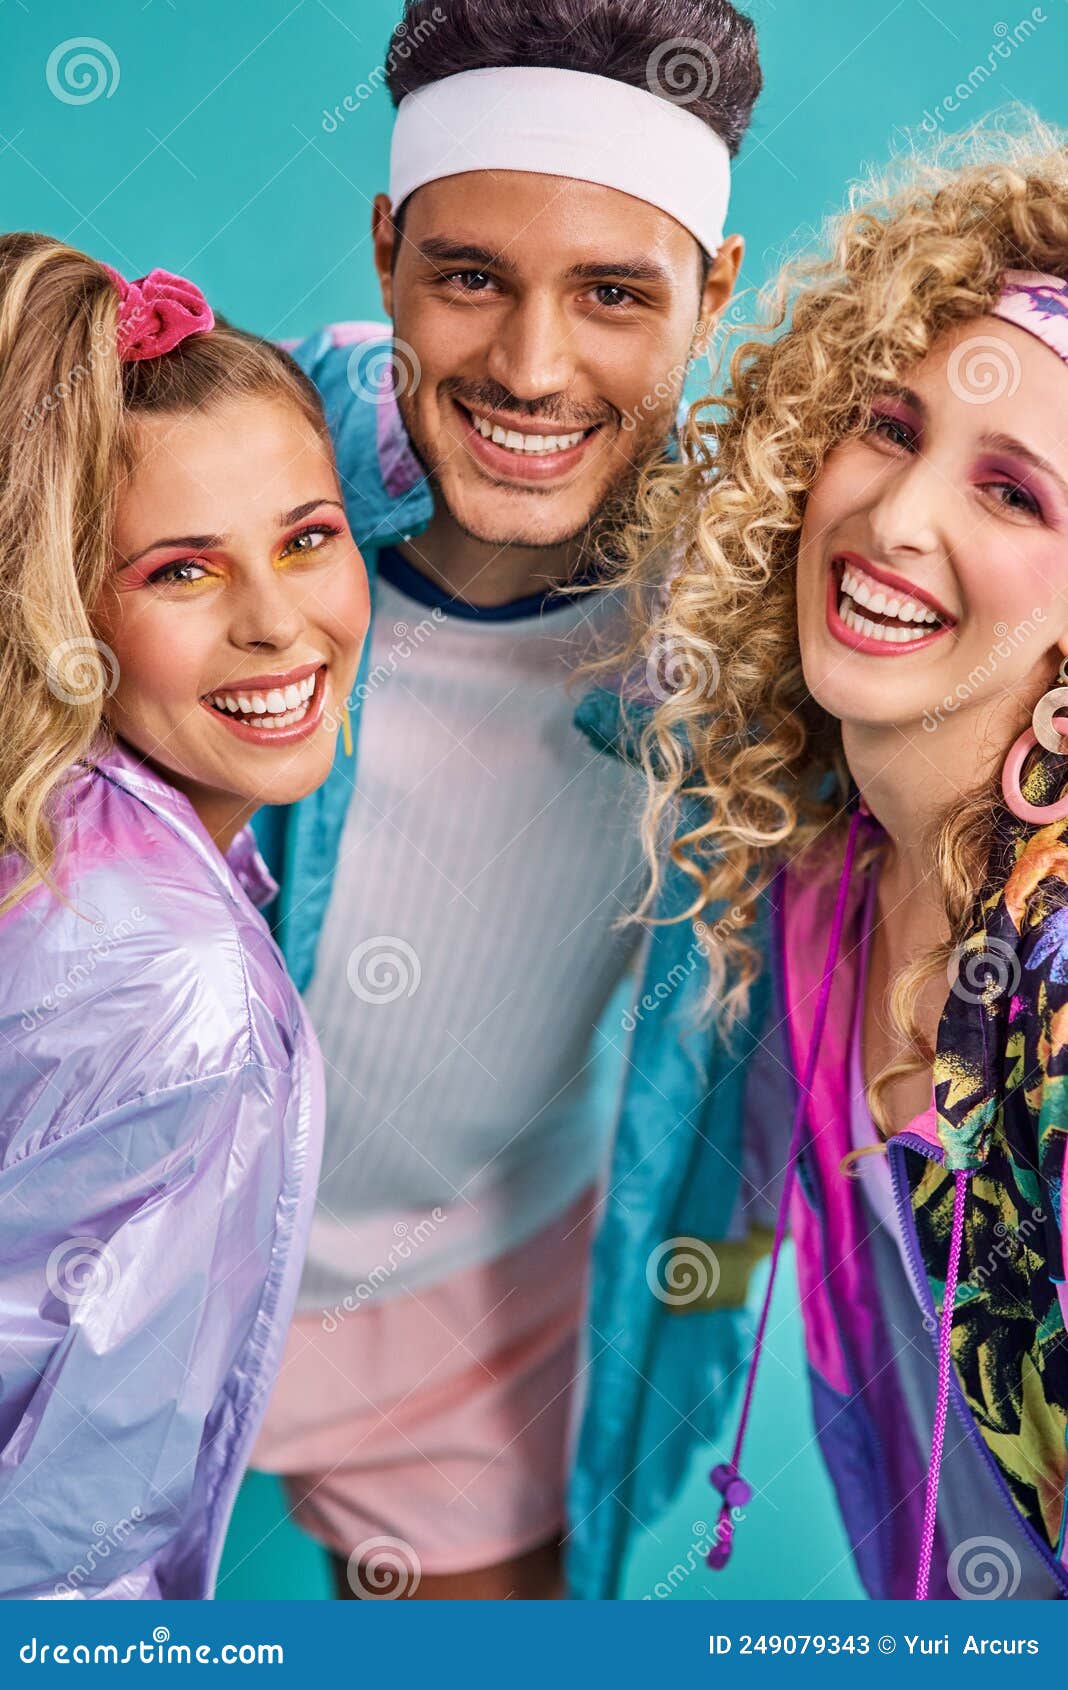 Listo Para Divertirse En Los 80. Toma De Tres Jóvenes Posando Juntos Con Ropa De Los 80 Contra Azul. archivo - Imagen de feliz, atractivo: 249079343